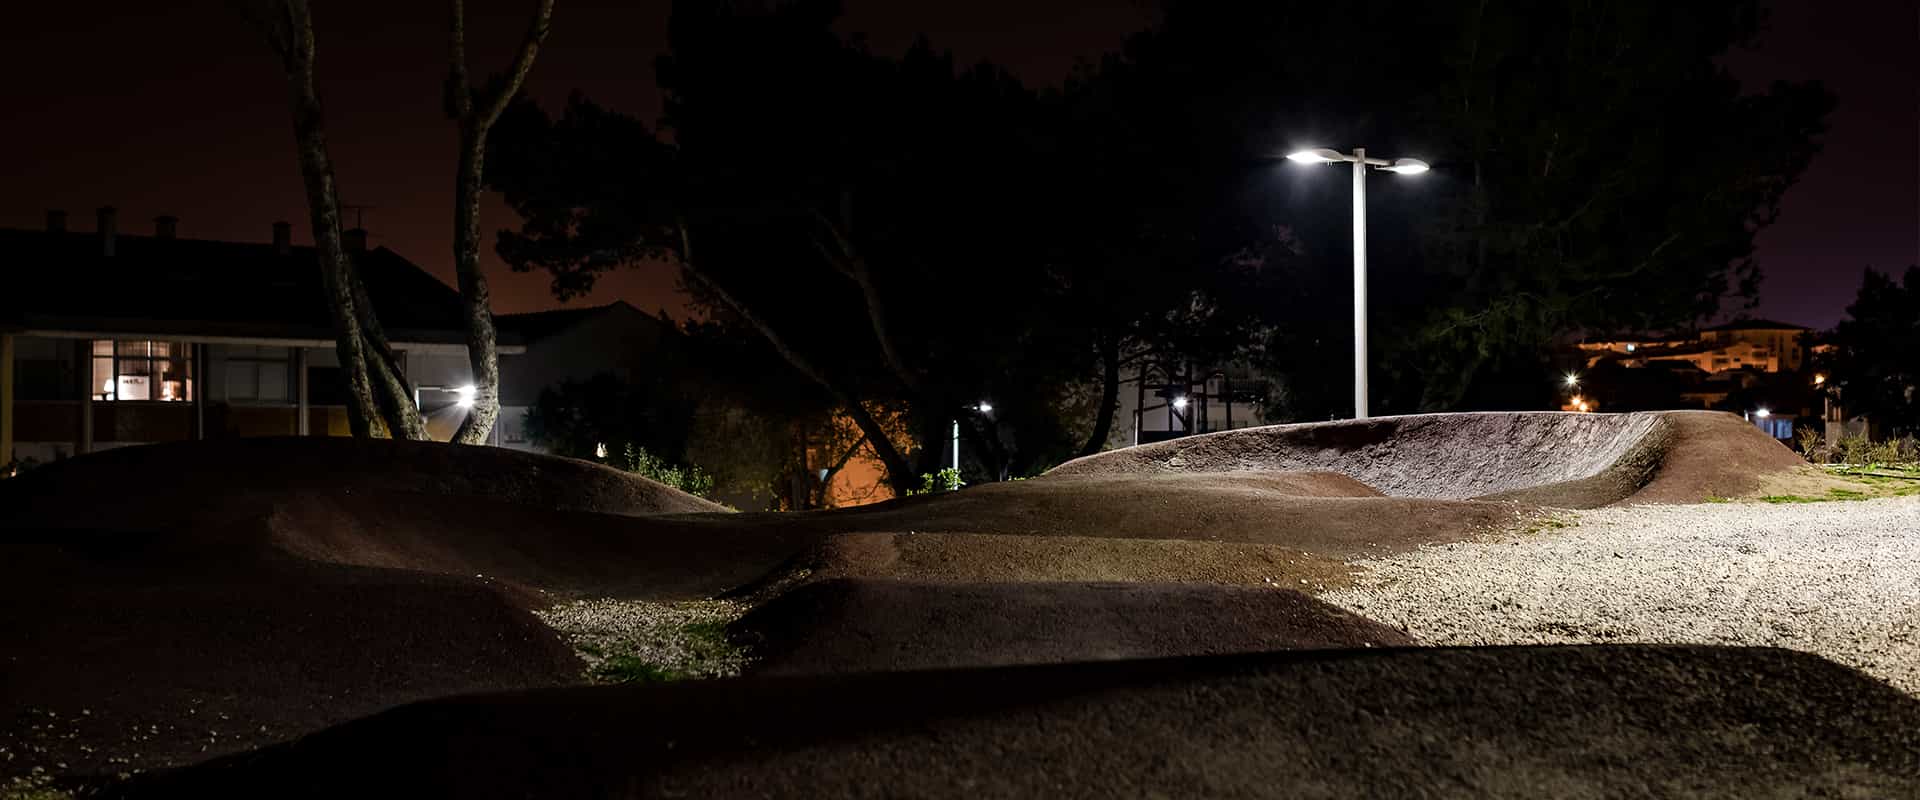 Arquiled Iluminação Pública LED - Projeto - Parque Urbano Outeiro da Vela - Cascais